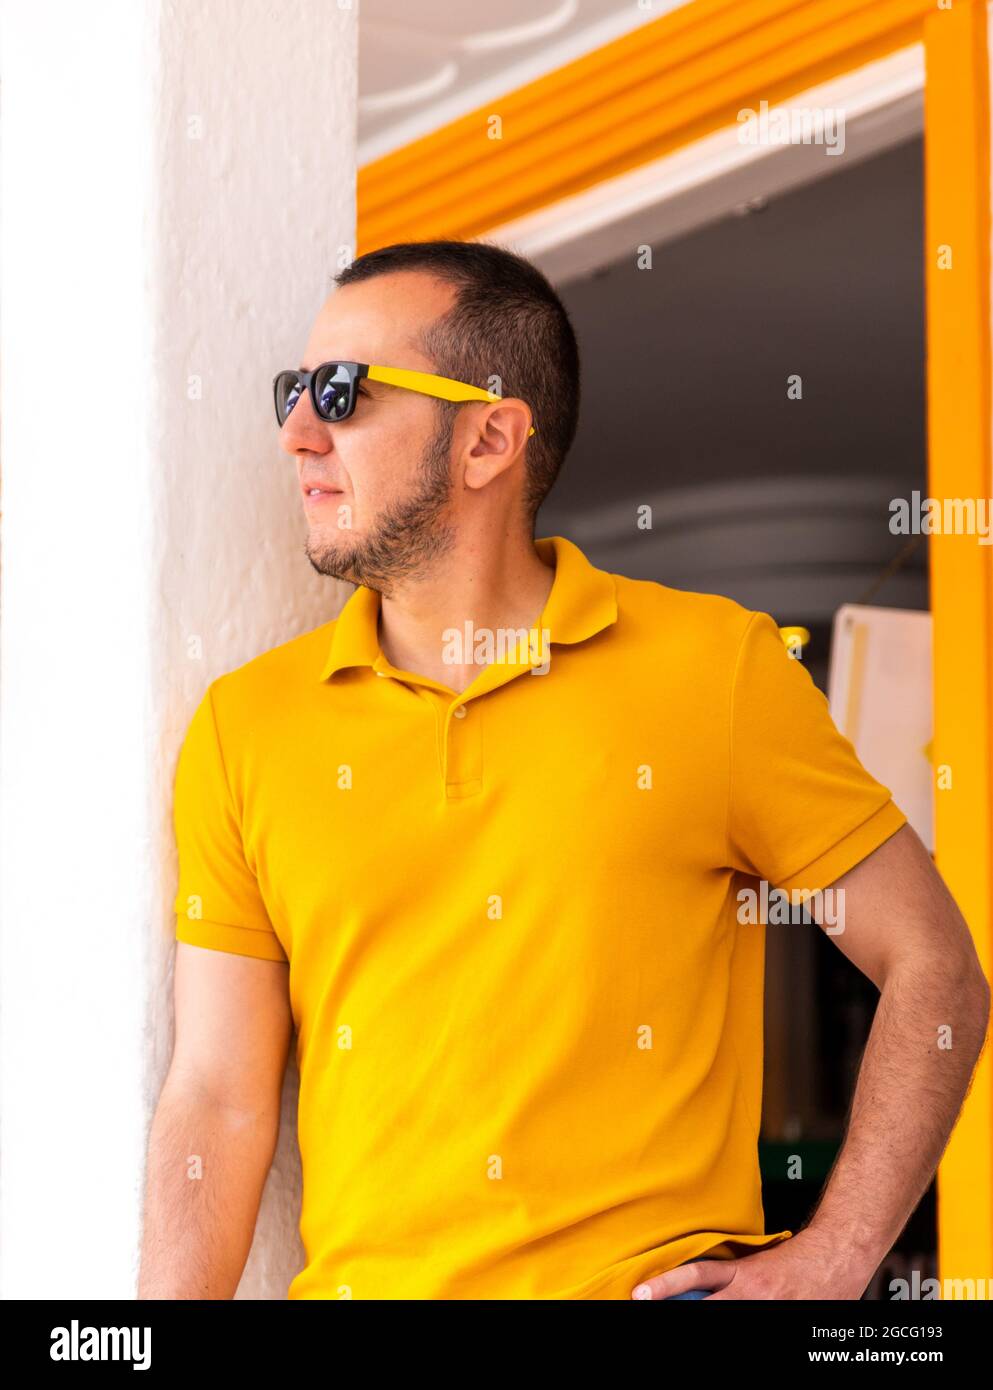 Vertikale Aufnahme eines jungen Mannes mit gelbem T-Shirt und Sonnenbrille, der in der Nähe einer Wand steht. Stockfoto